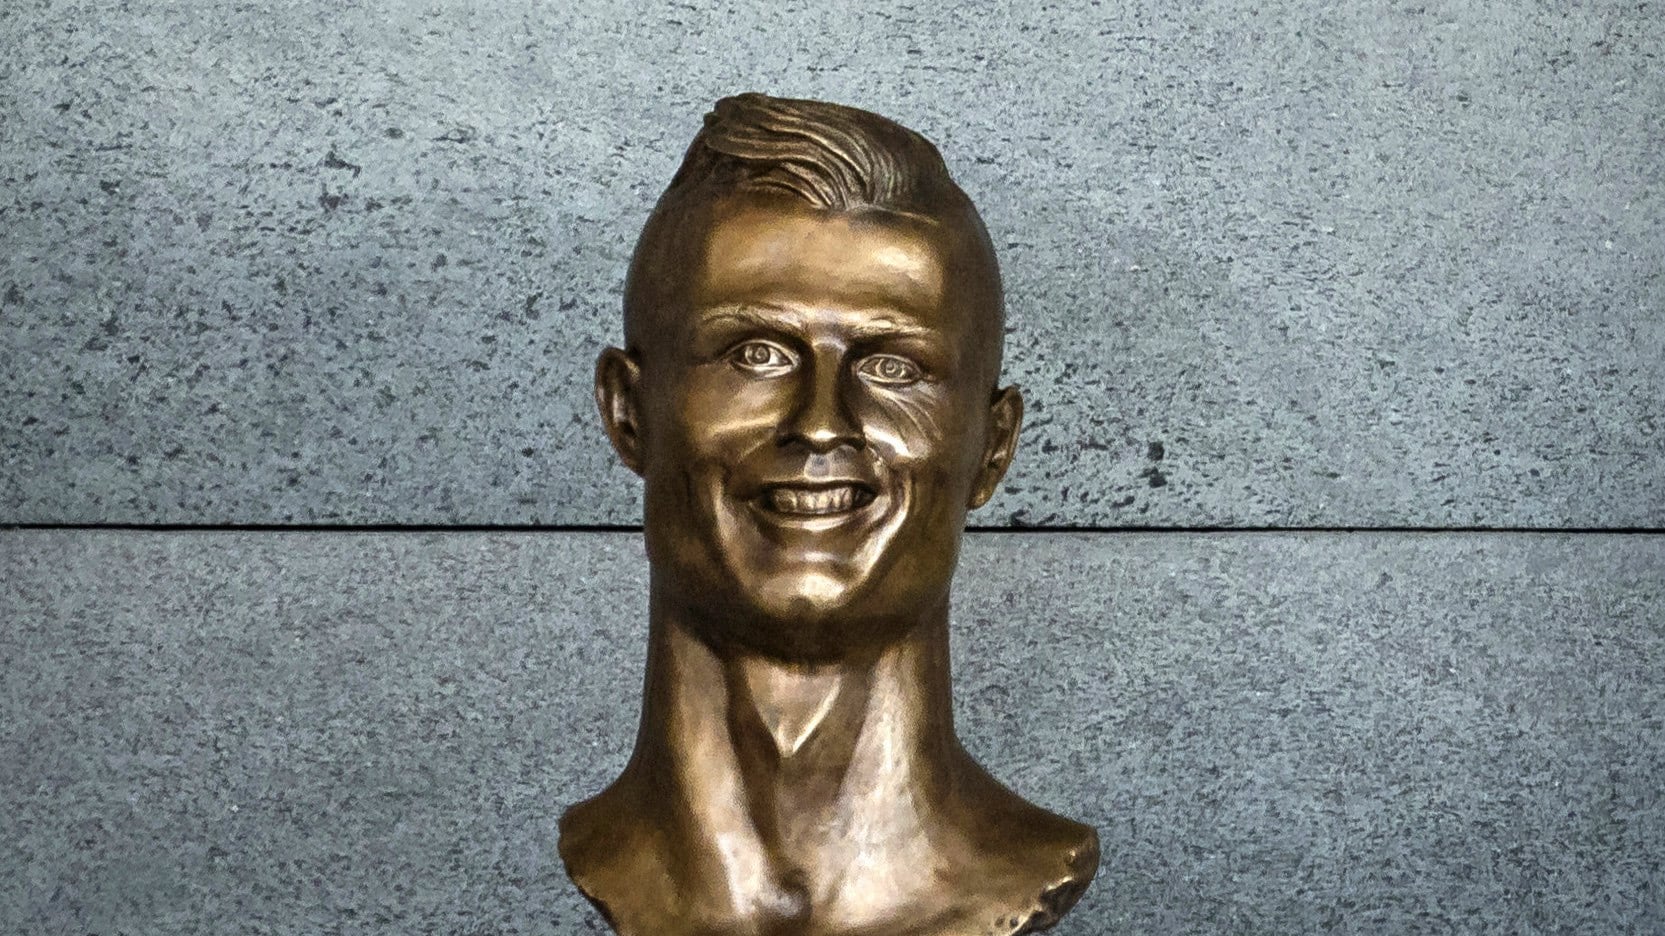 Escultura fea de Cristiano Ronaldo